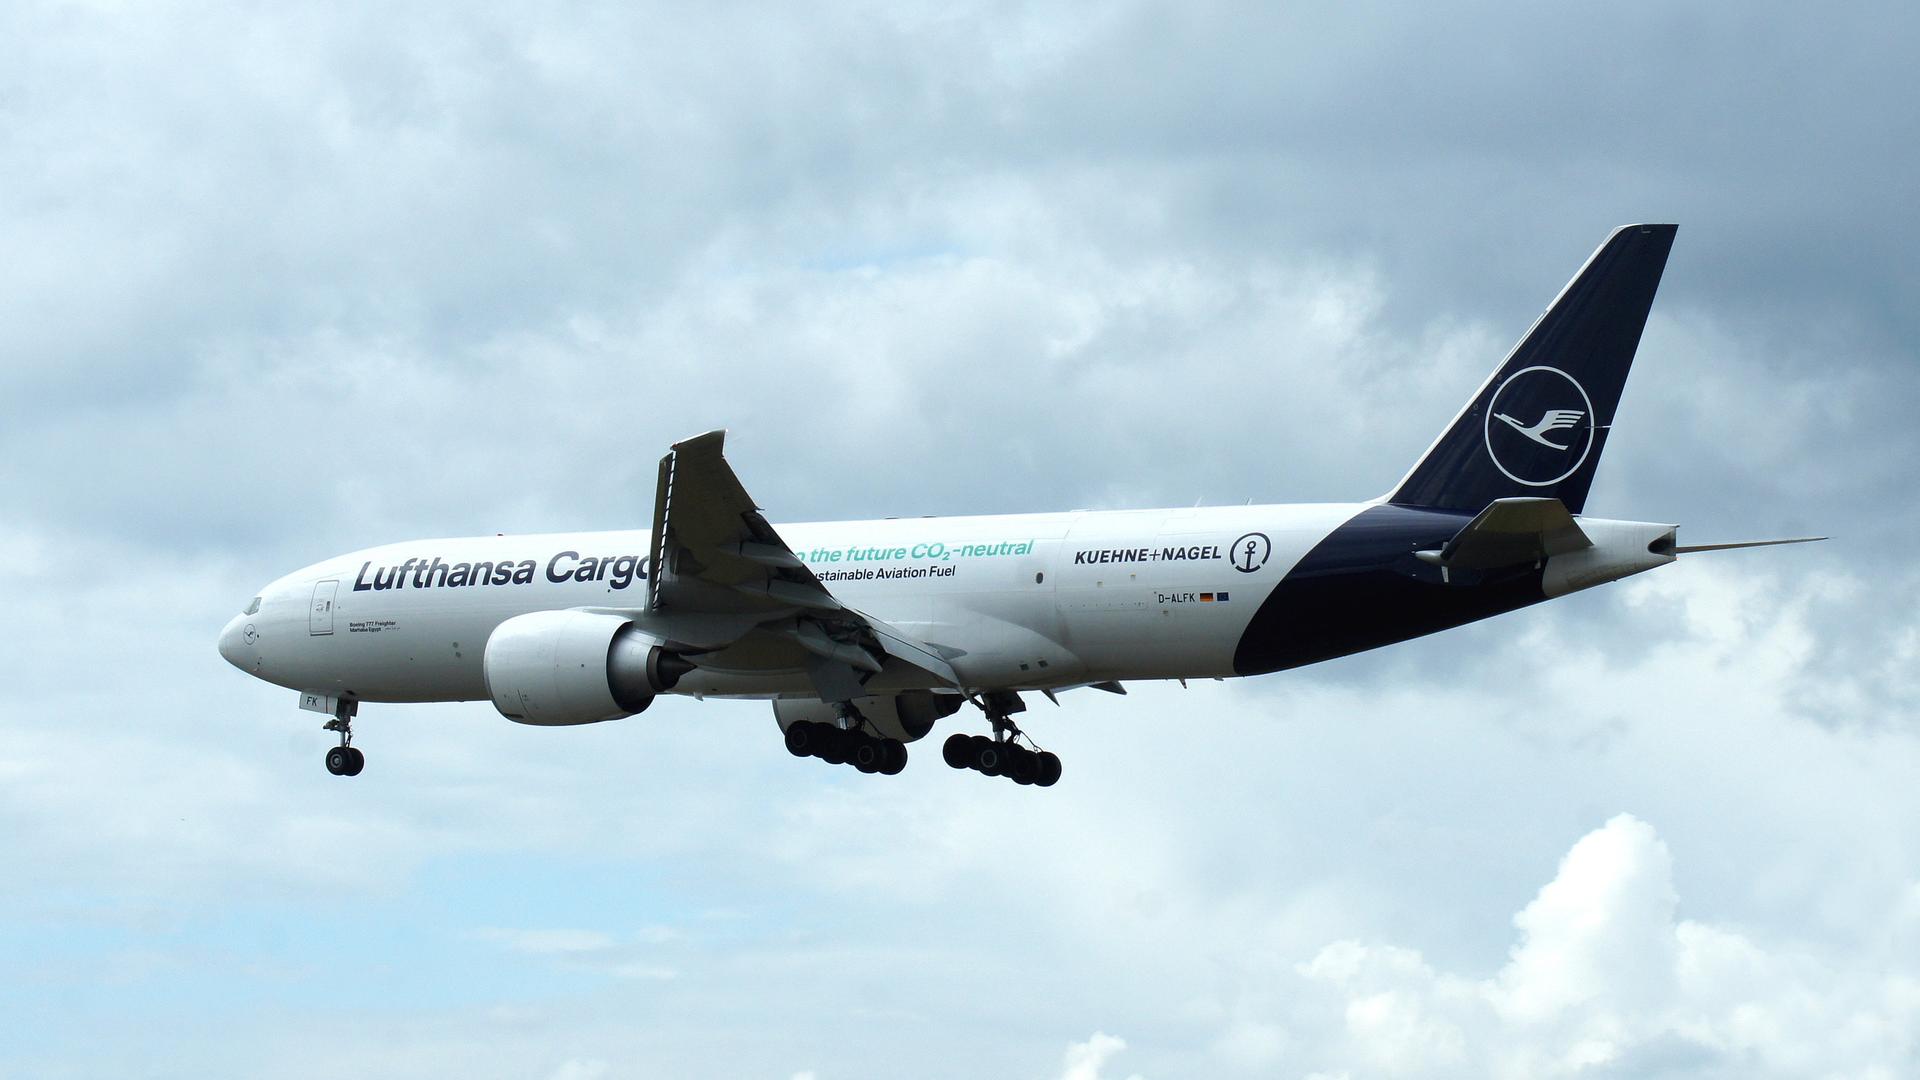 Eine Boeing 777 Freighter der Lufthansa Cargo im Landeanflug. Am Rumpf Werbung für CO2 neutrales Fliegen mit nachhaltigem Treibstoff.